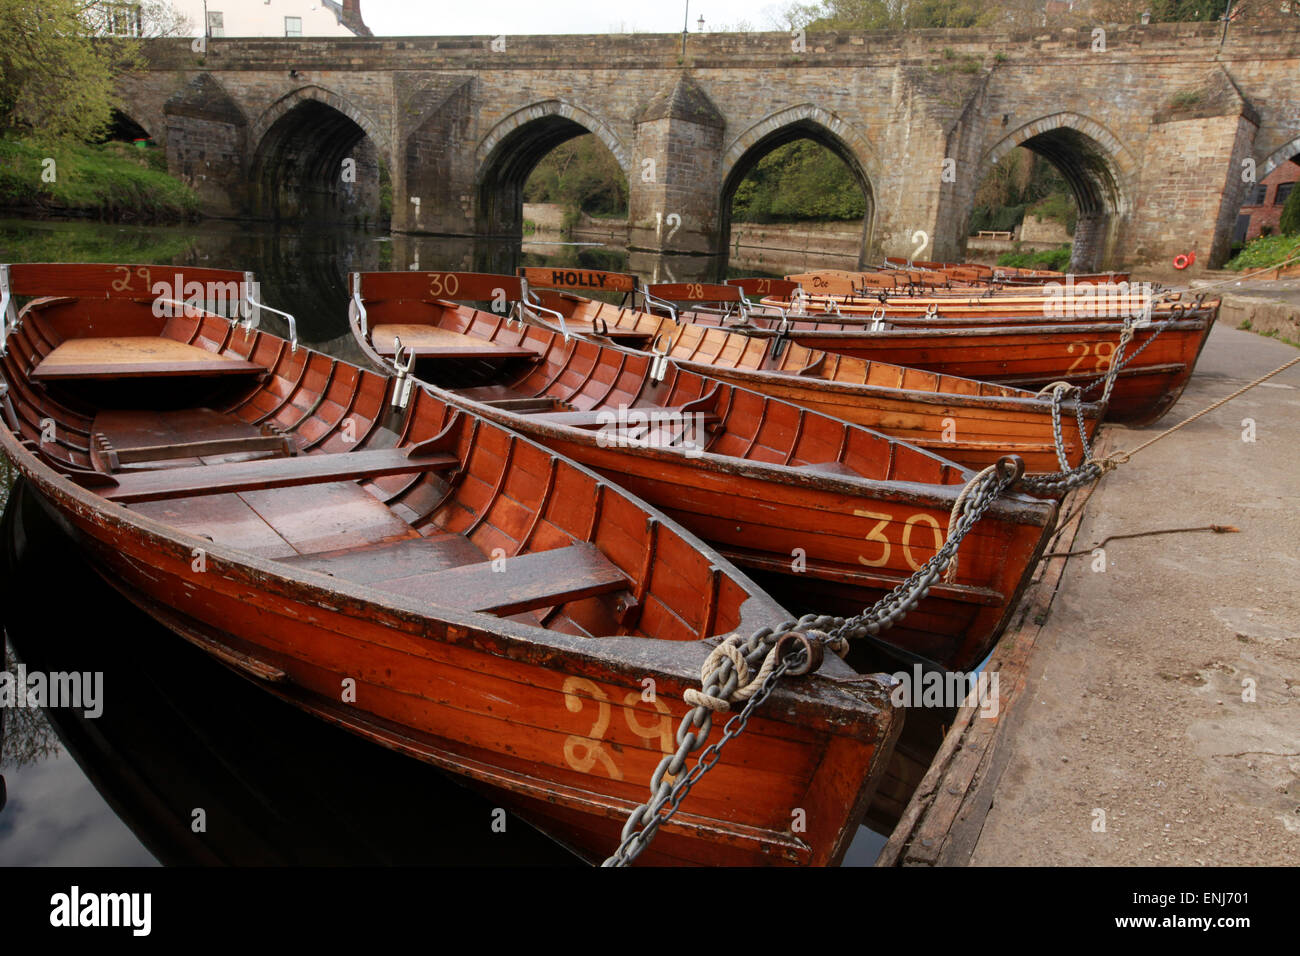 In legno classico di barche a remi sul fiume usura dal ponte Elvet Durham Regno Unito Foto Stock